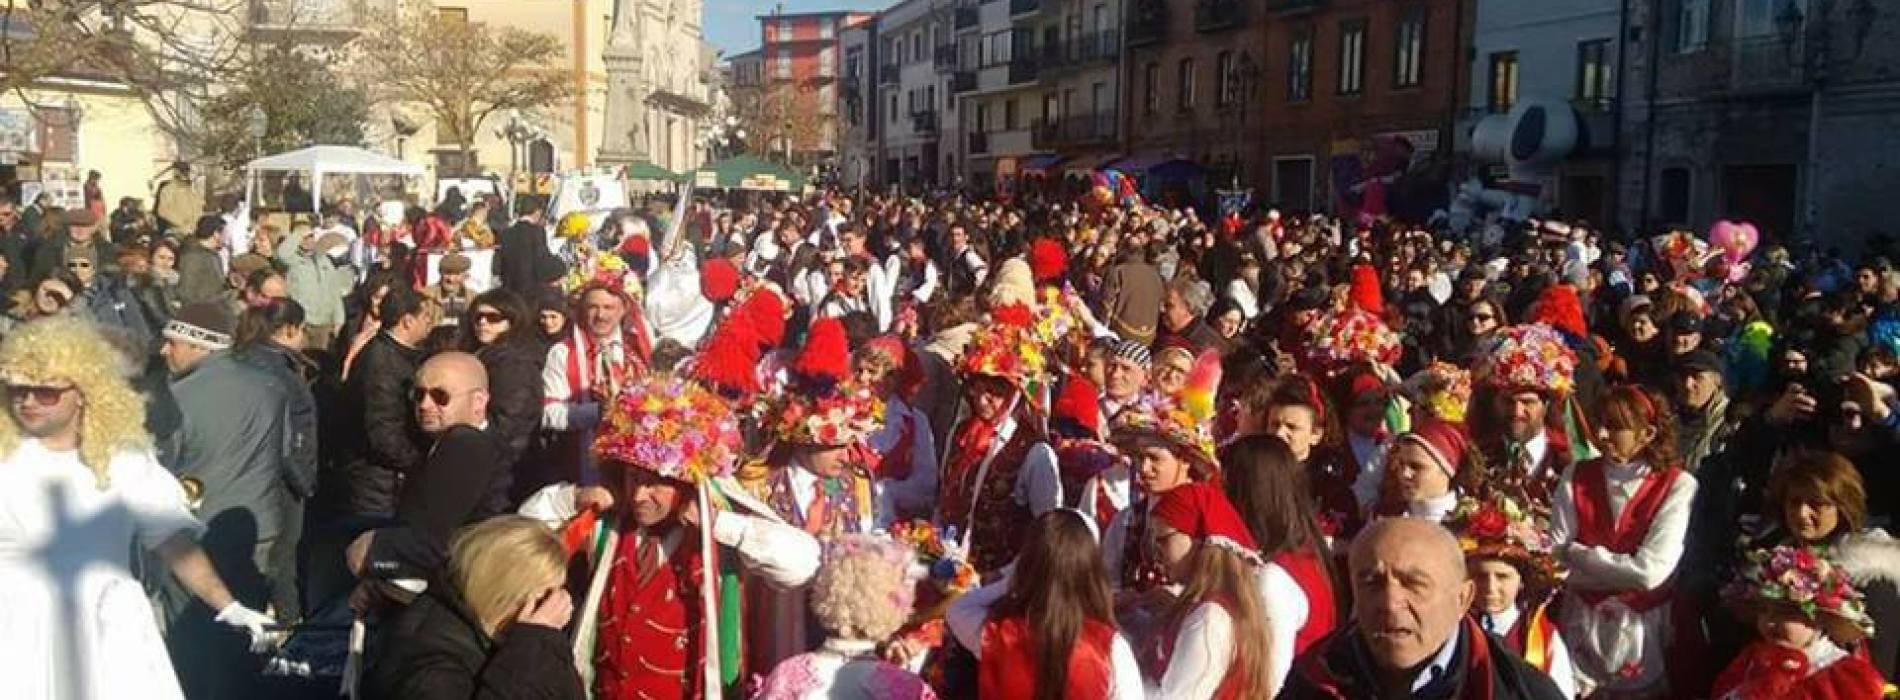 Gli ultimi giorni di Carnevale, la destinazione è Montemarano